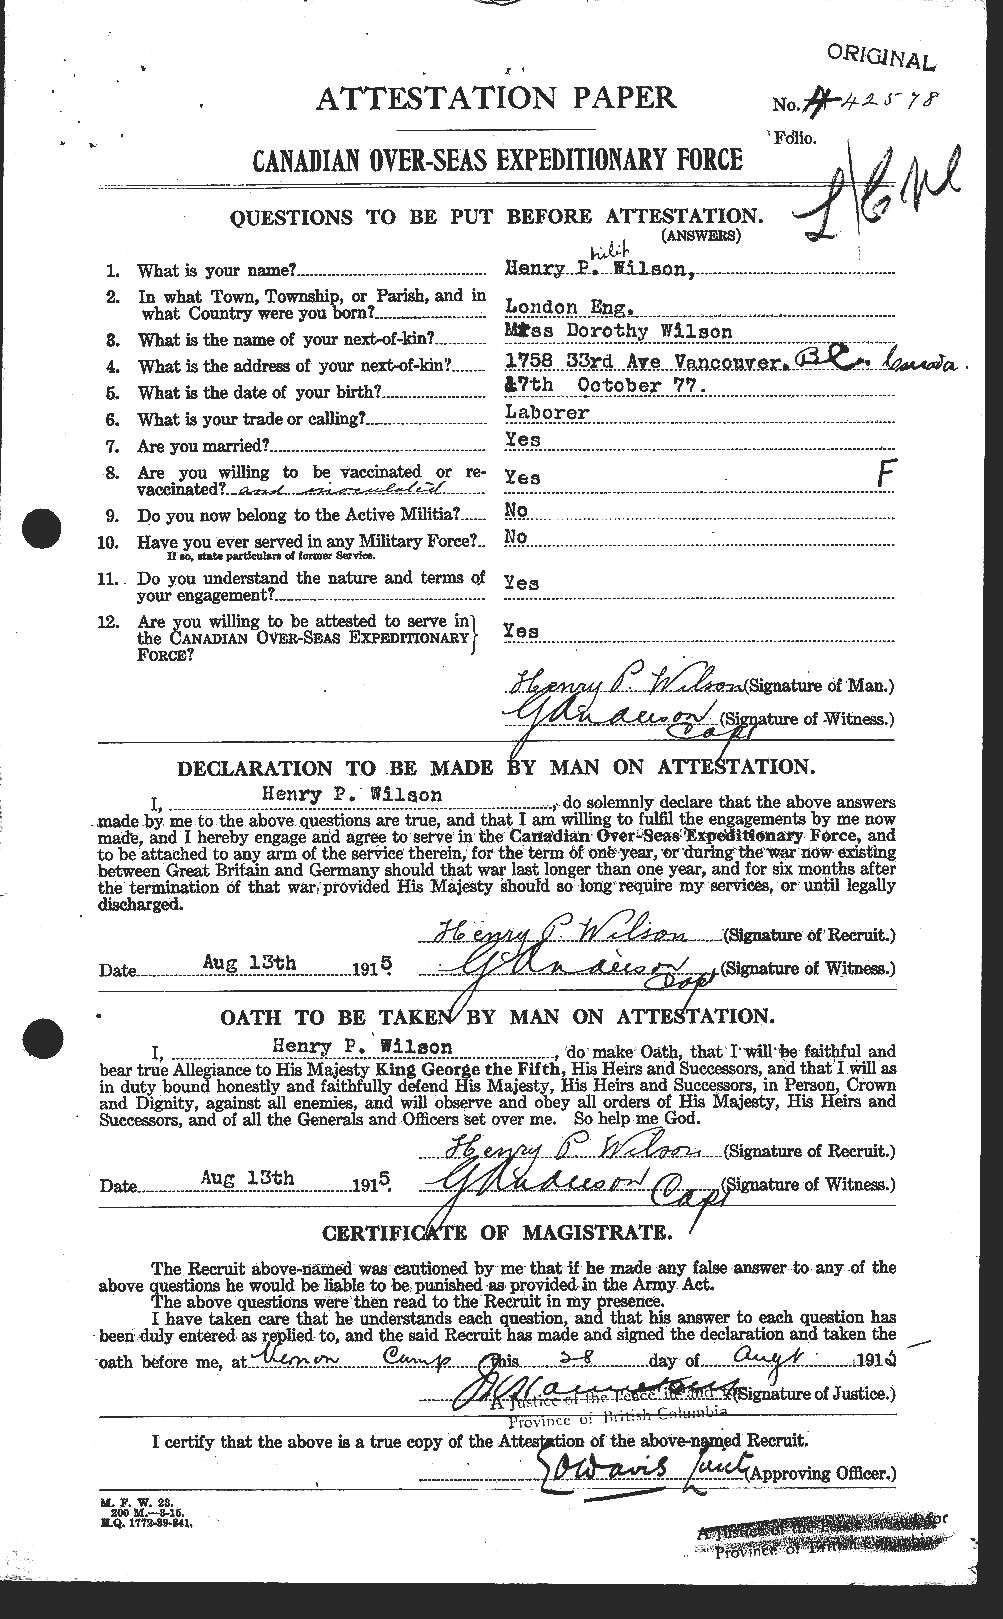 Dossiers du Personnel de la Première Guerre mondiale - CEC 679539a